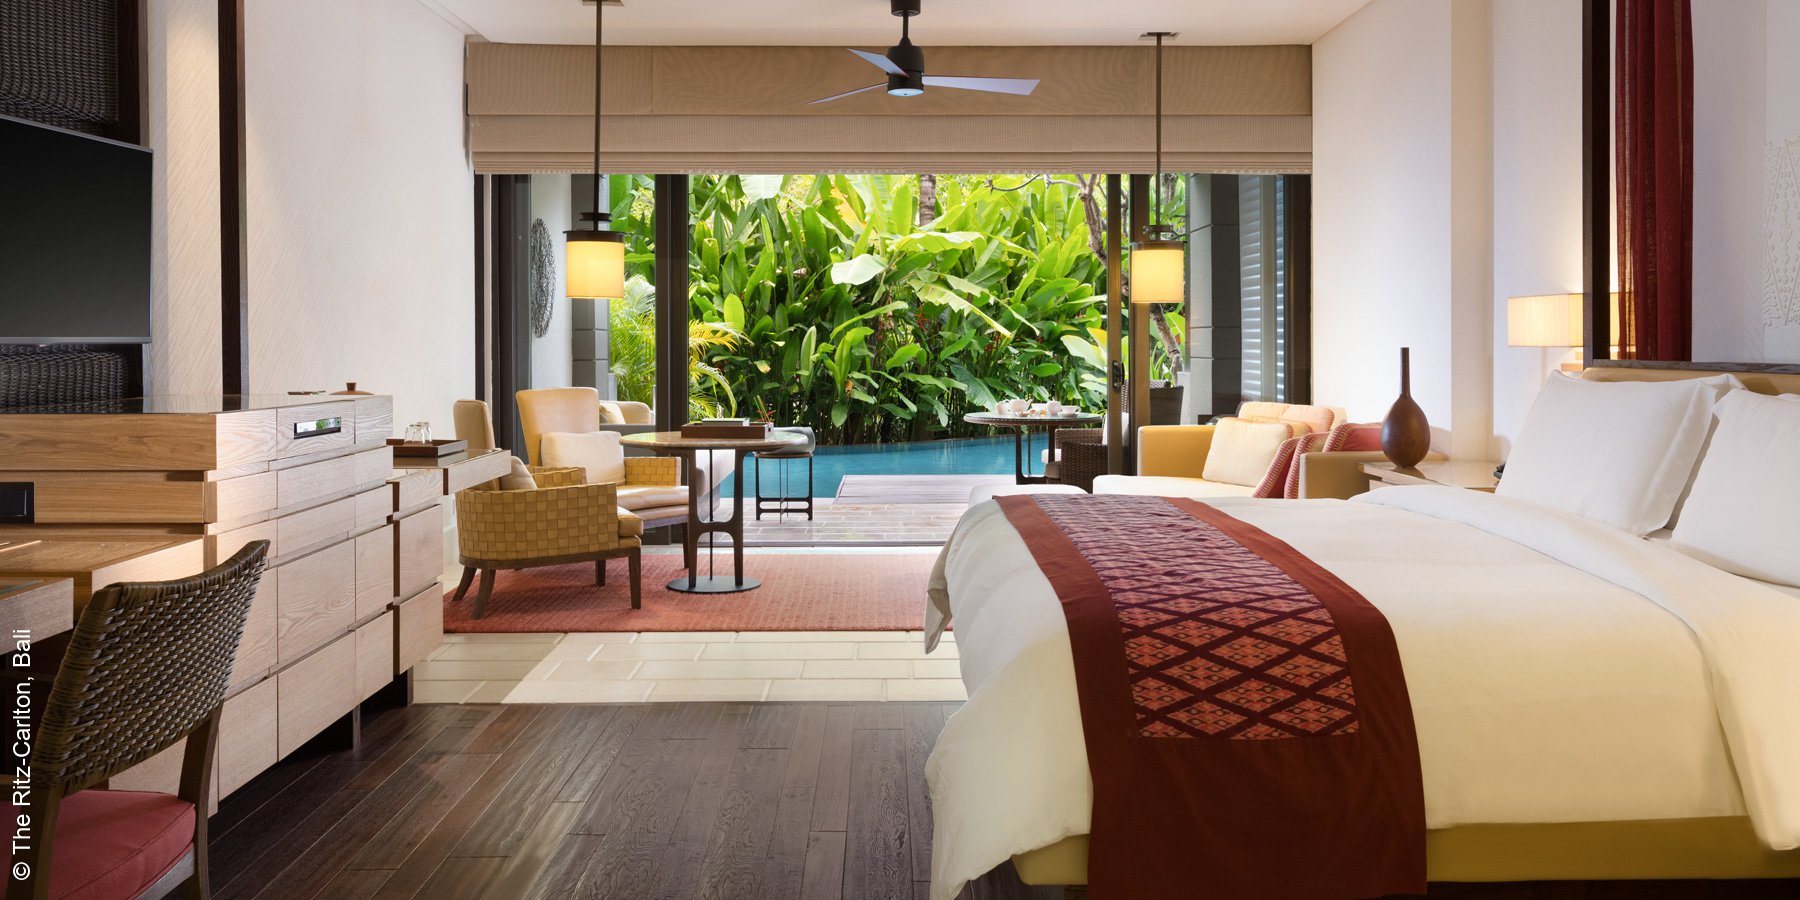 The Ritz Carlton | Bali | Junior Suite Interior | luxuszeit.com